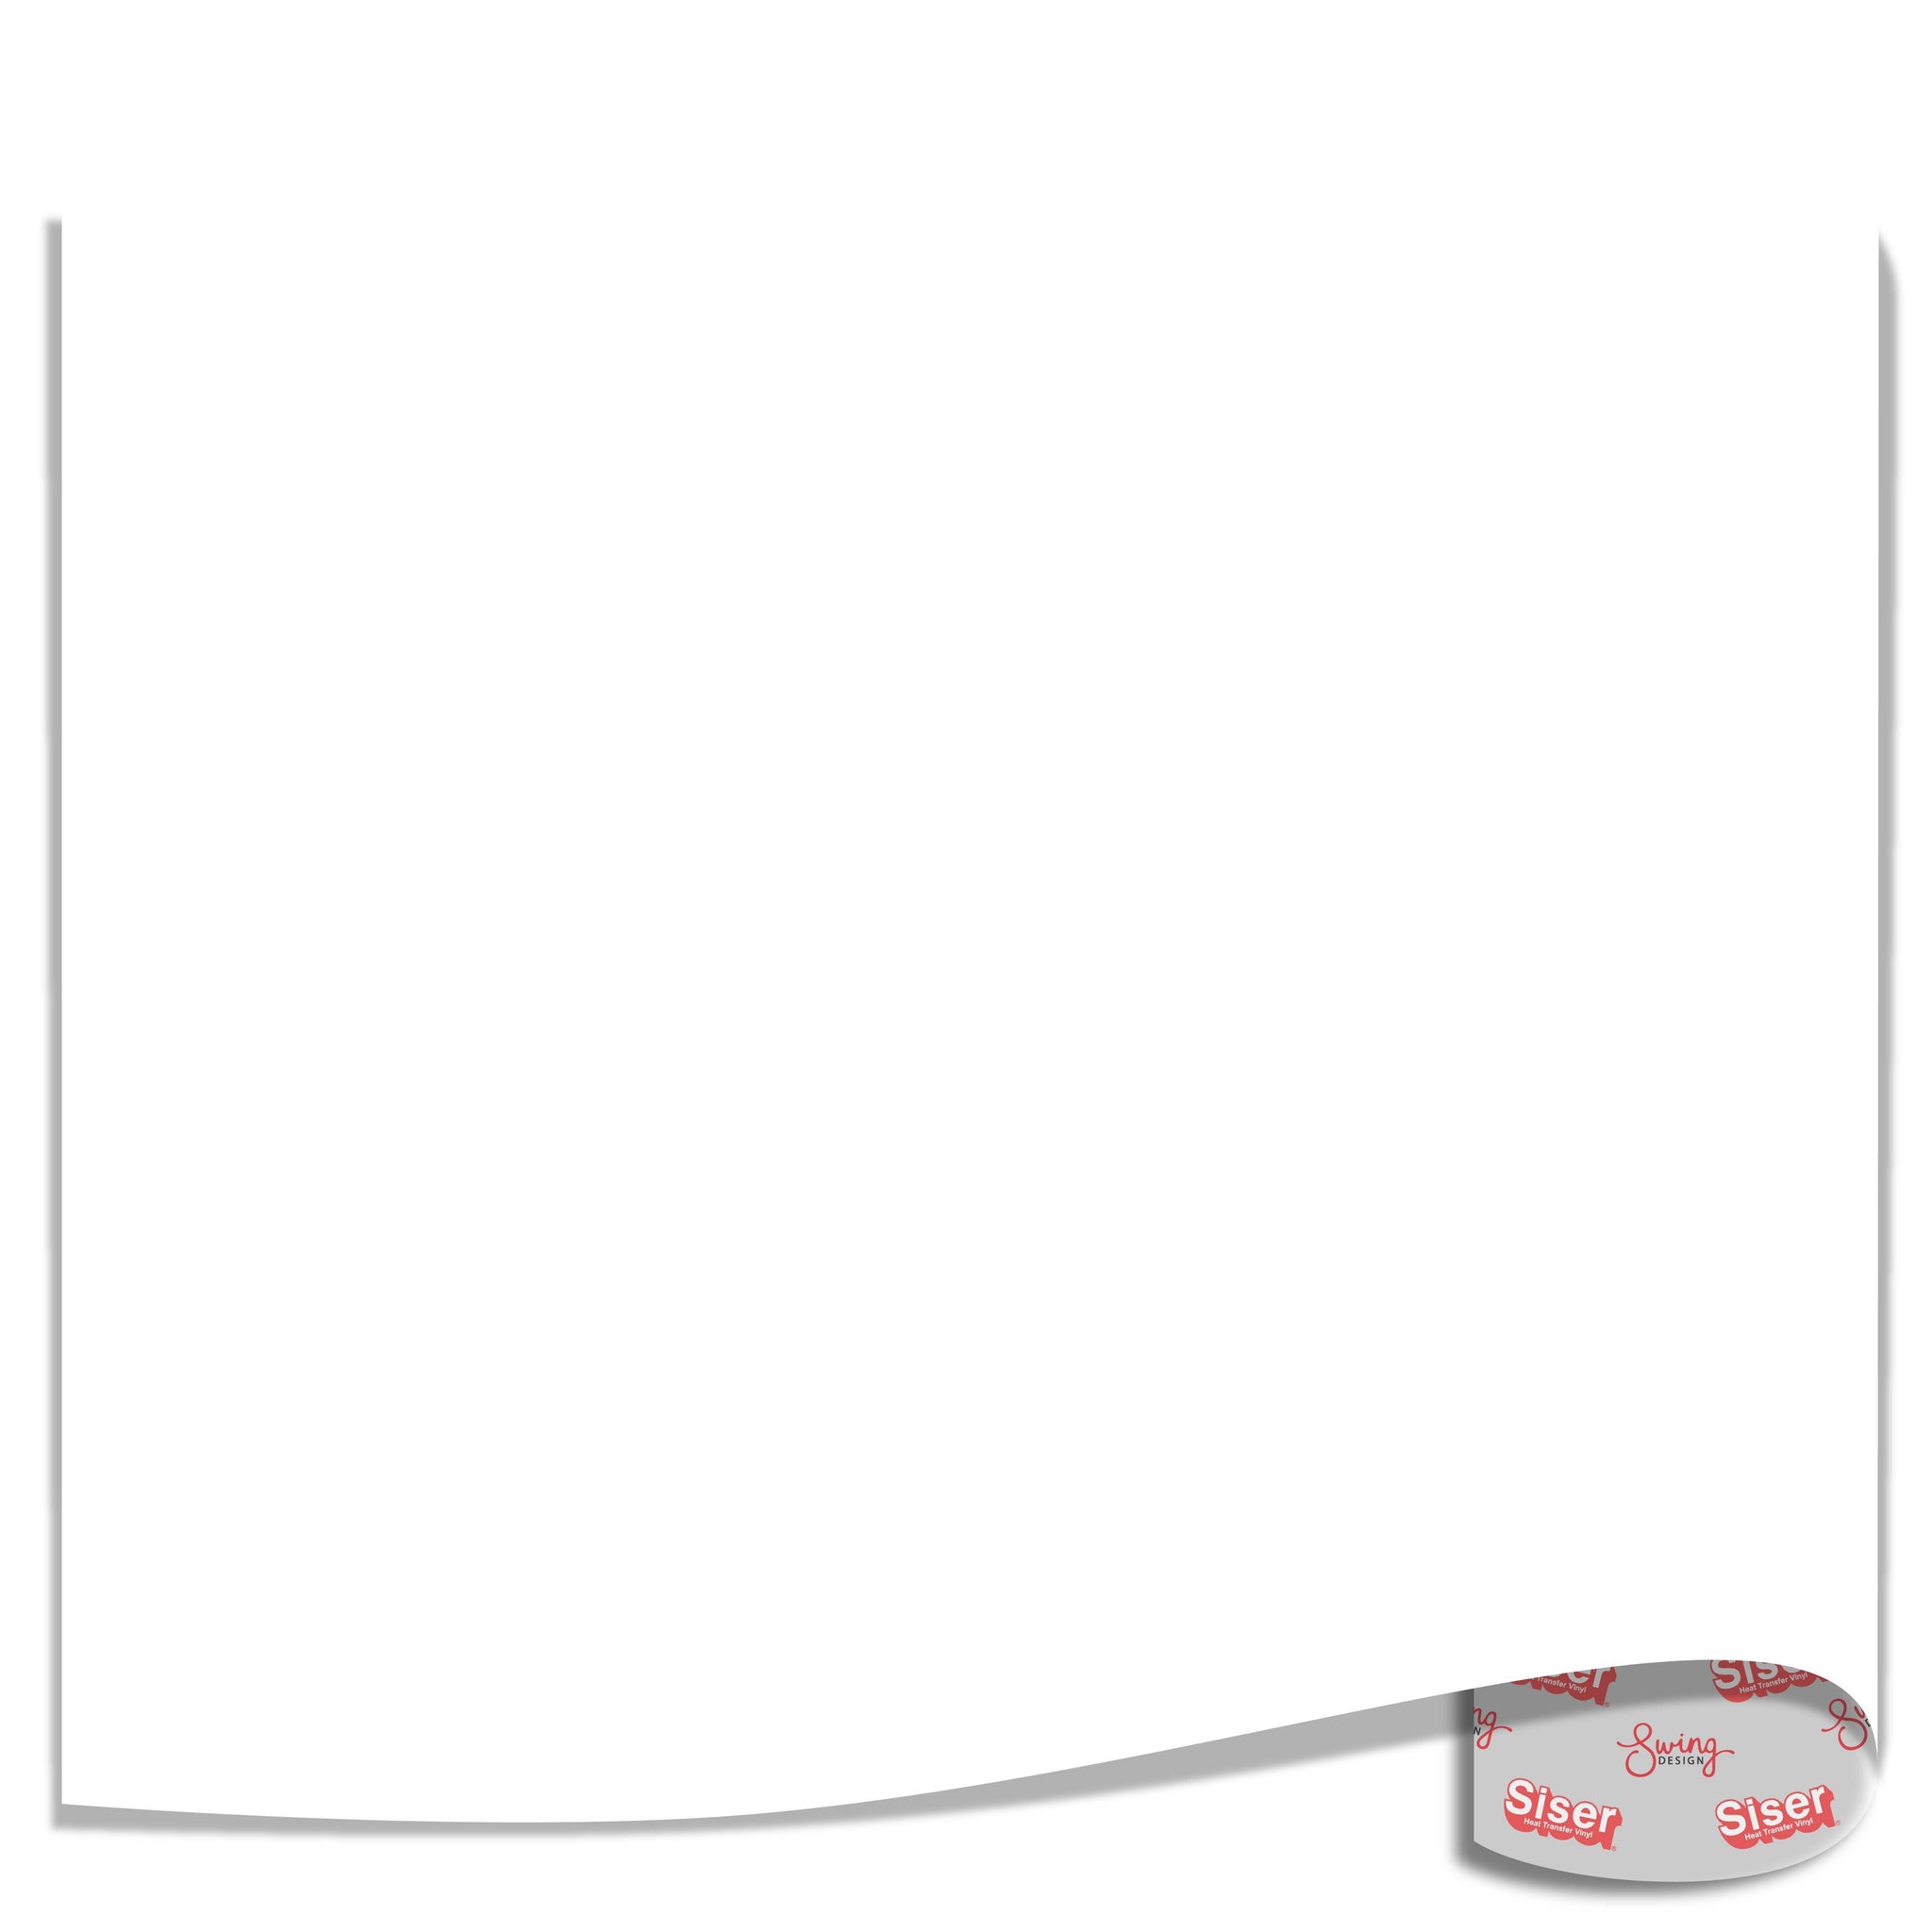 Siser StripFlock Heat Transfer Vinyl (HTV) - White– Swing Design